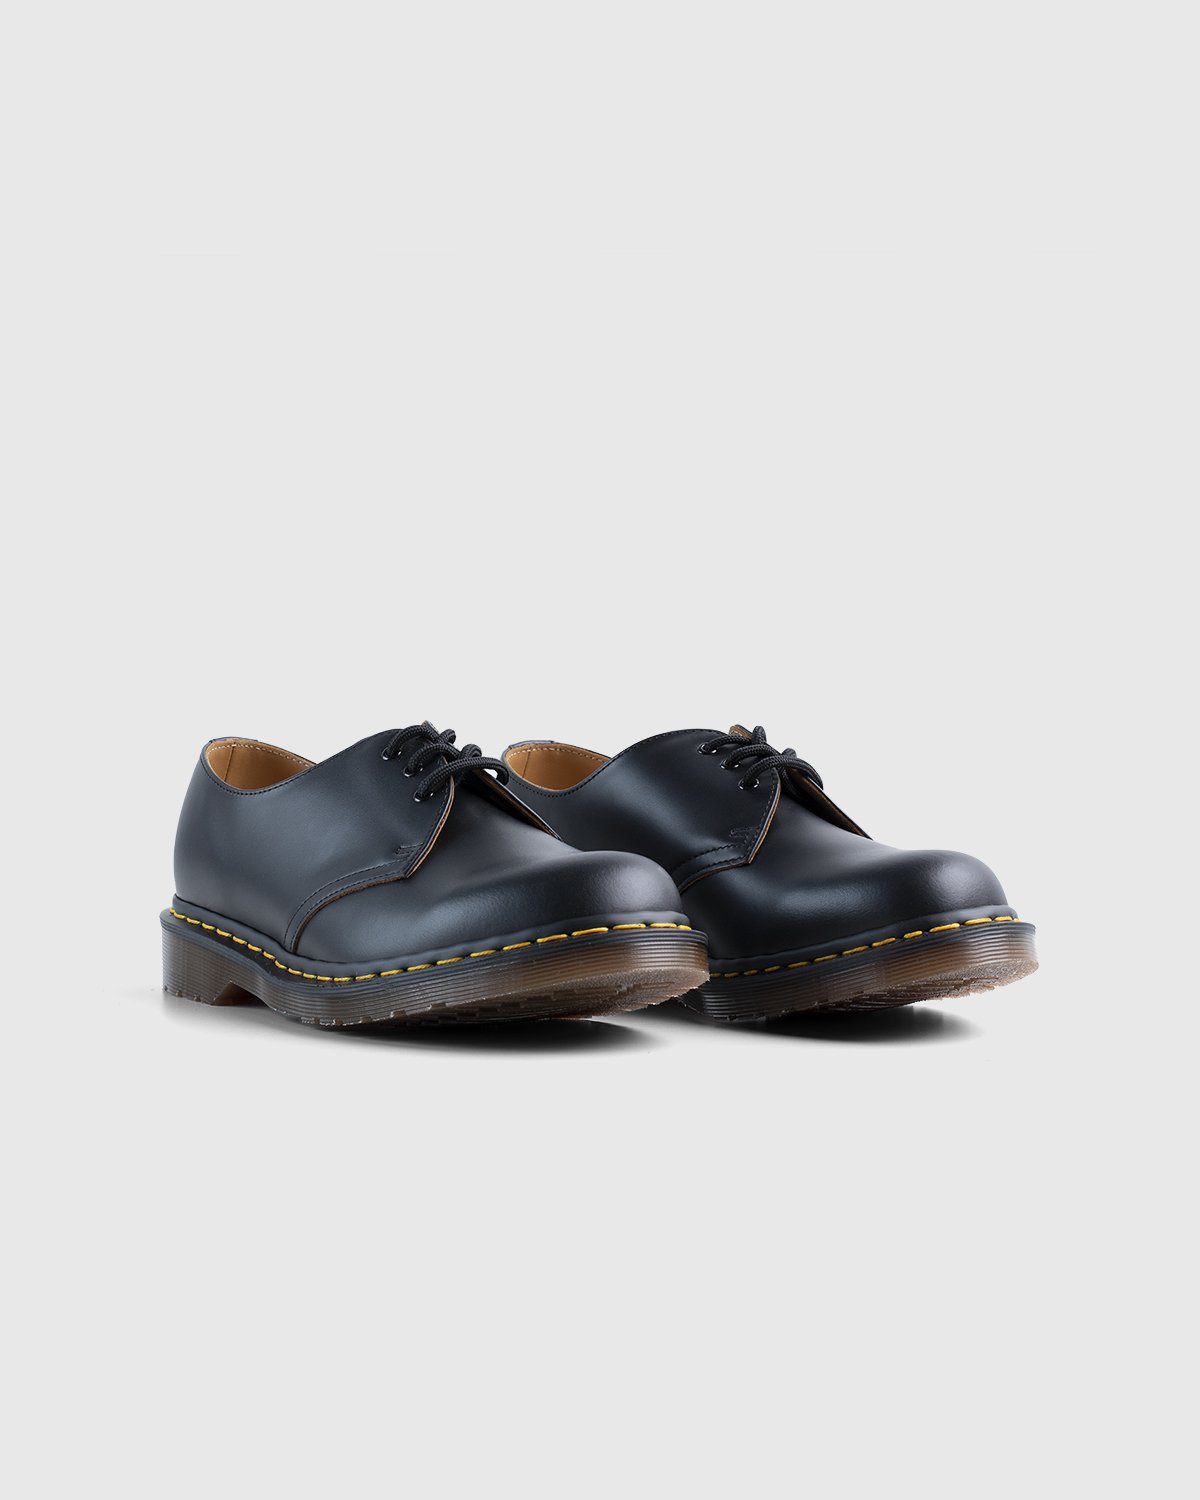 Dr. Martens - Vintage 1461 Black Quilon - Footwear - Black - Image 3